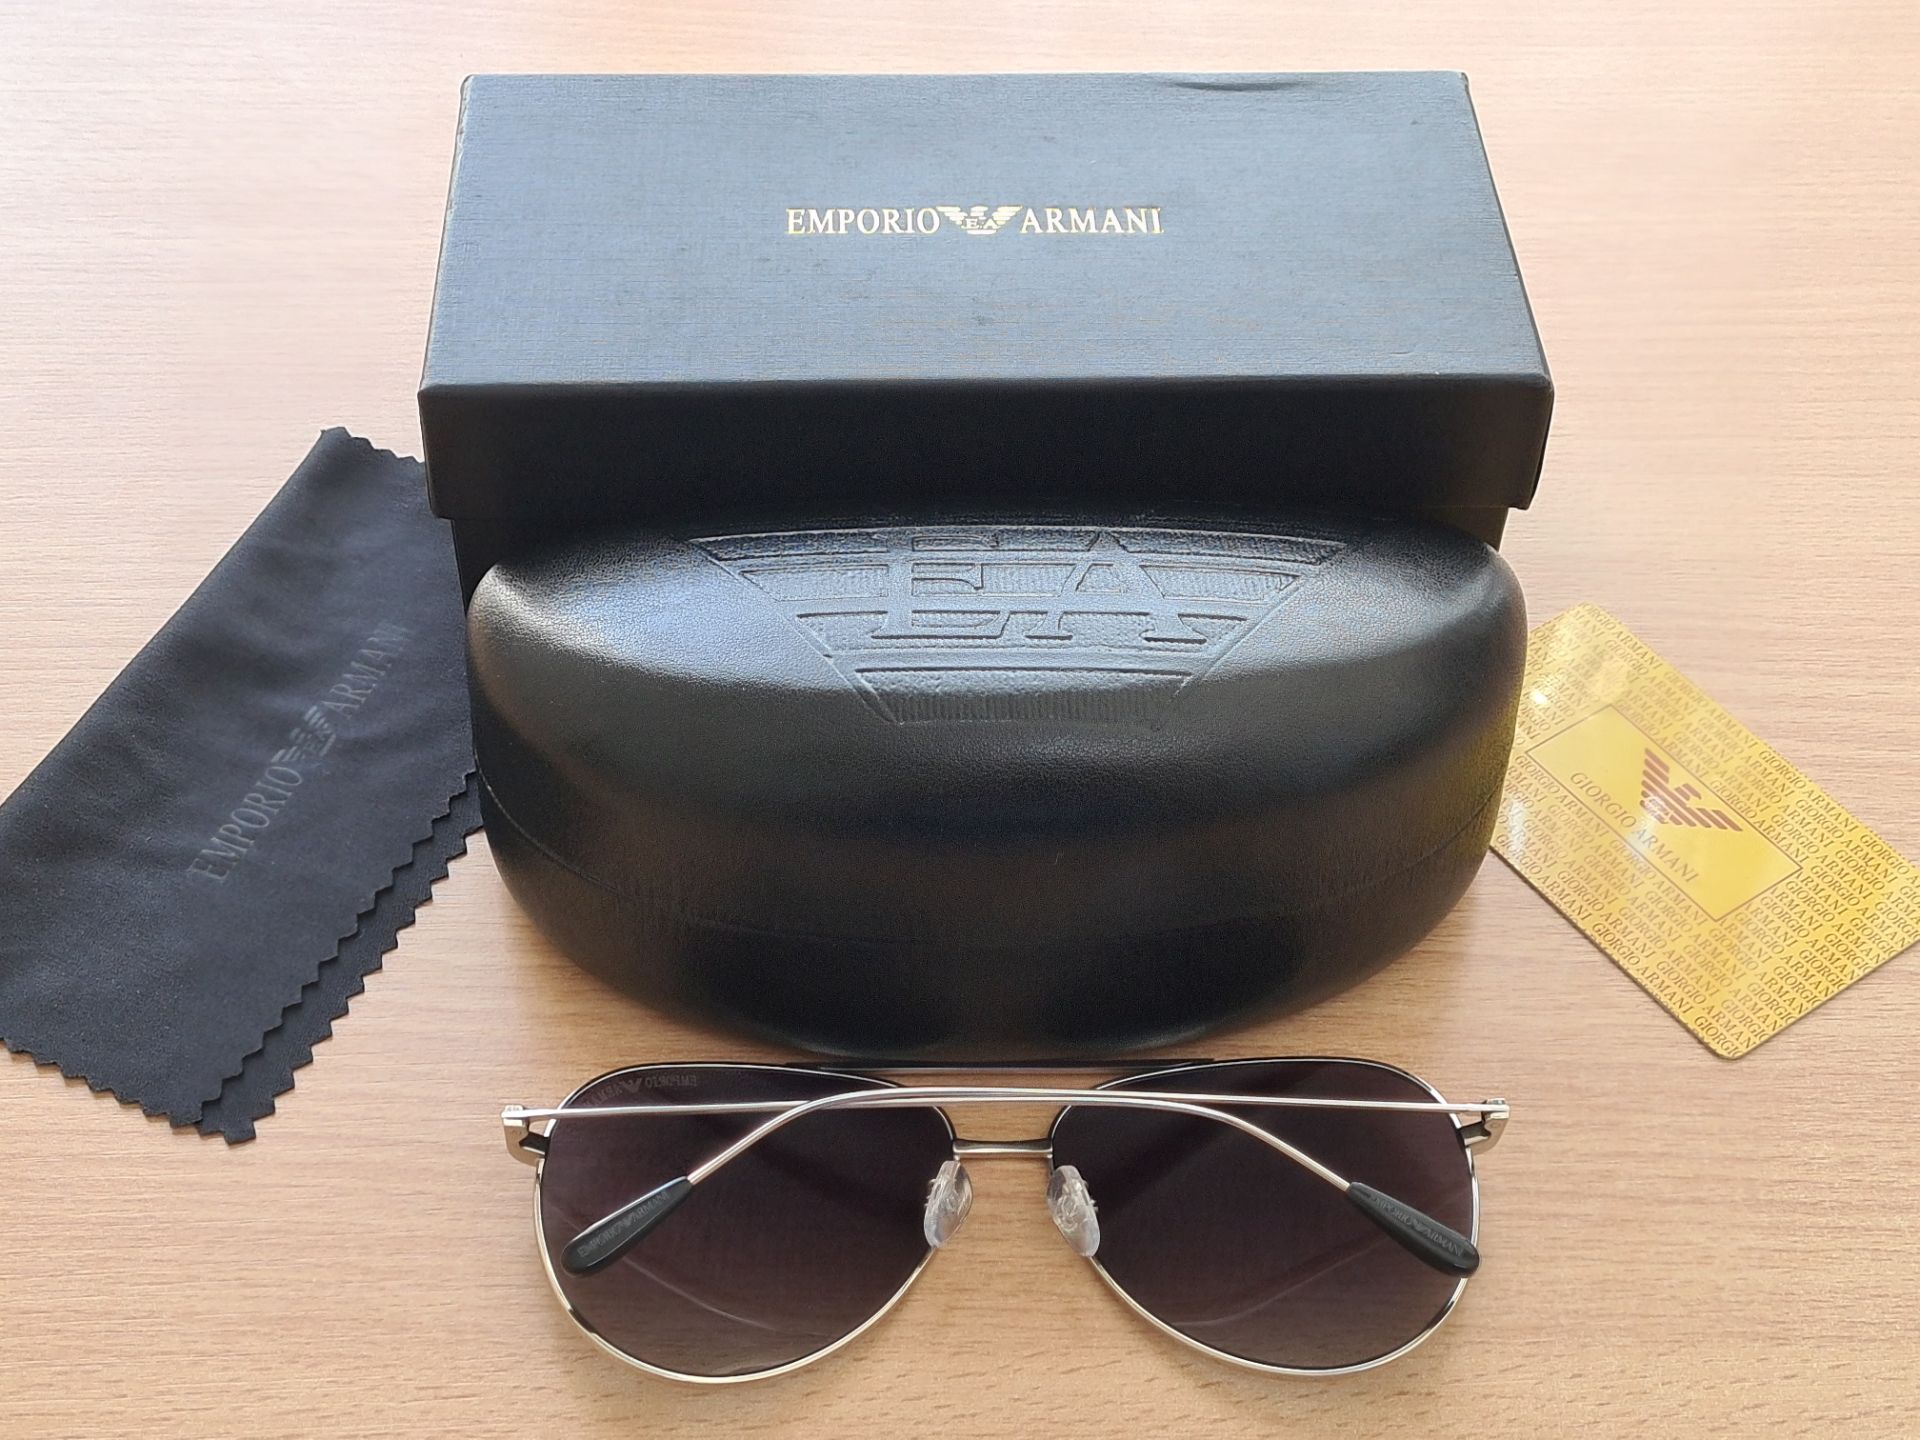 Emporio Armani EA2096 Sunglasses - Image 2 of 2